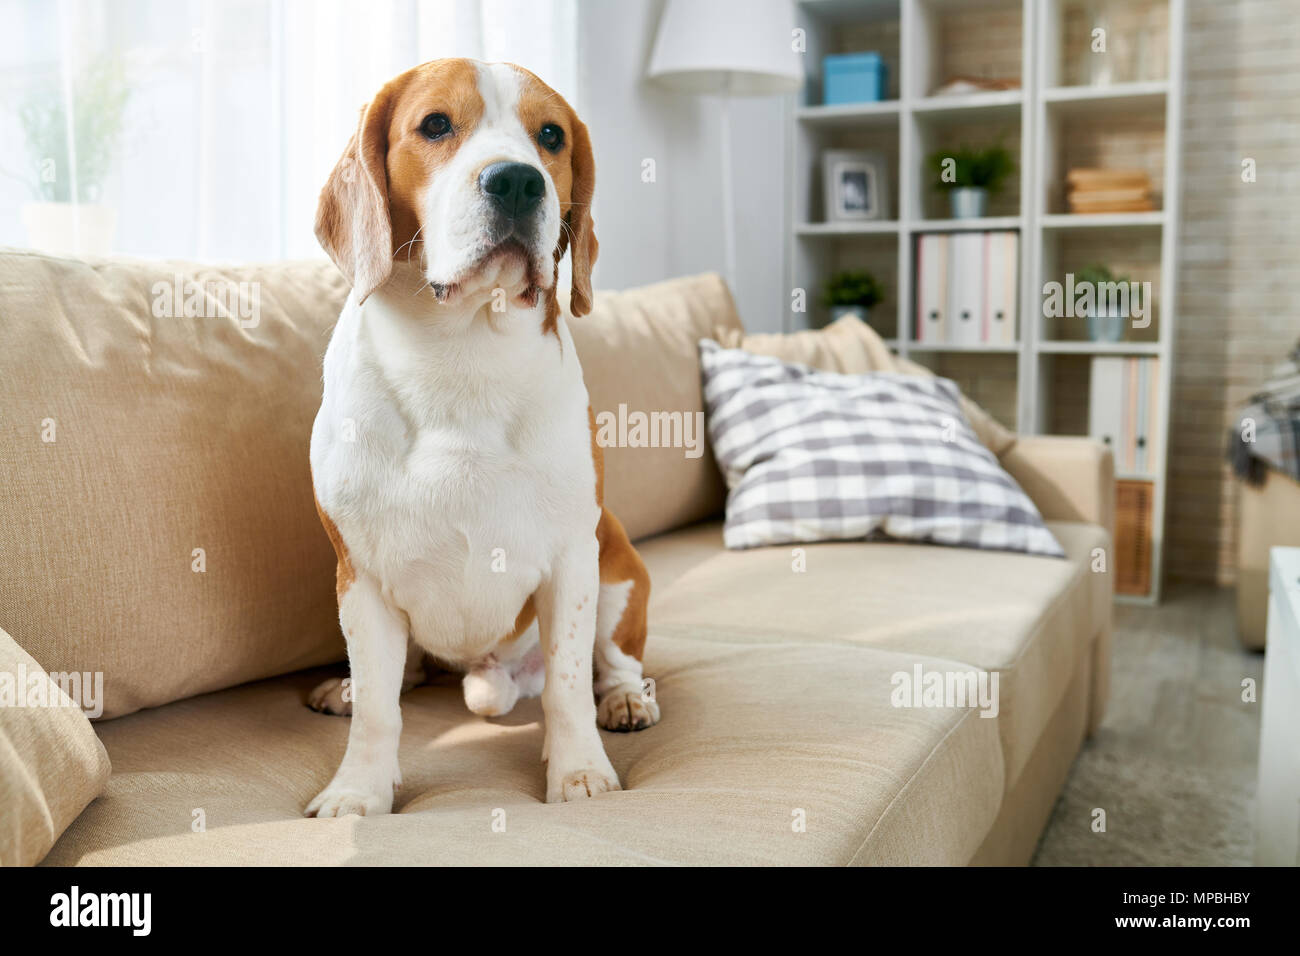 Pet Dog Sitting on Sofa Stock Photo - Alamy